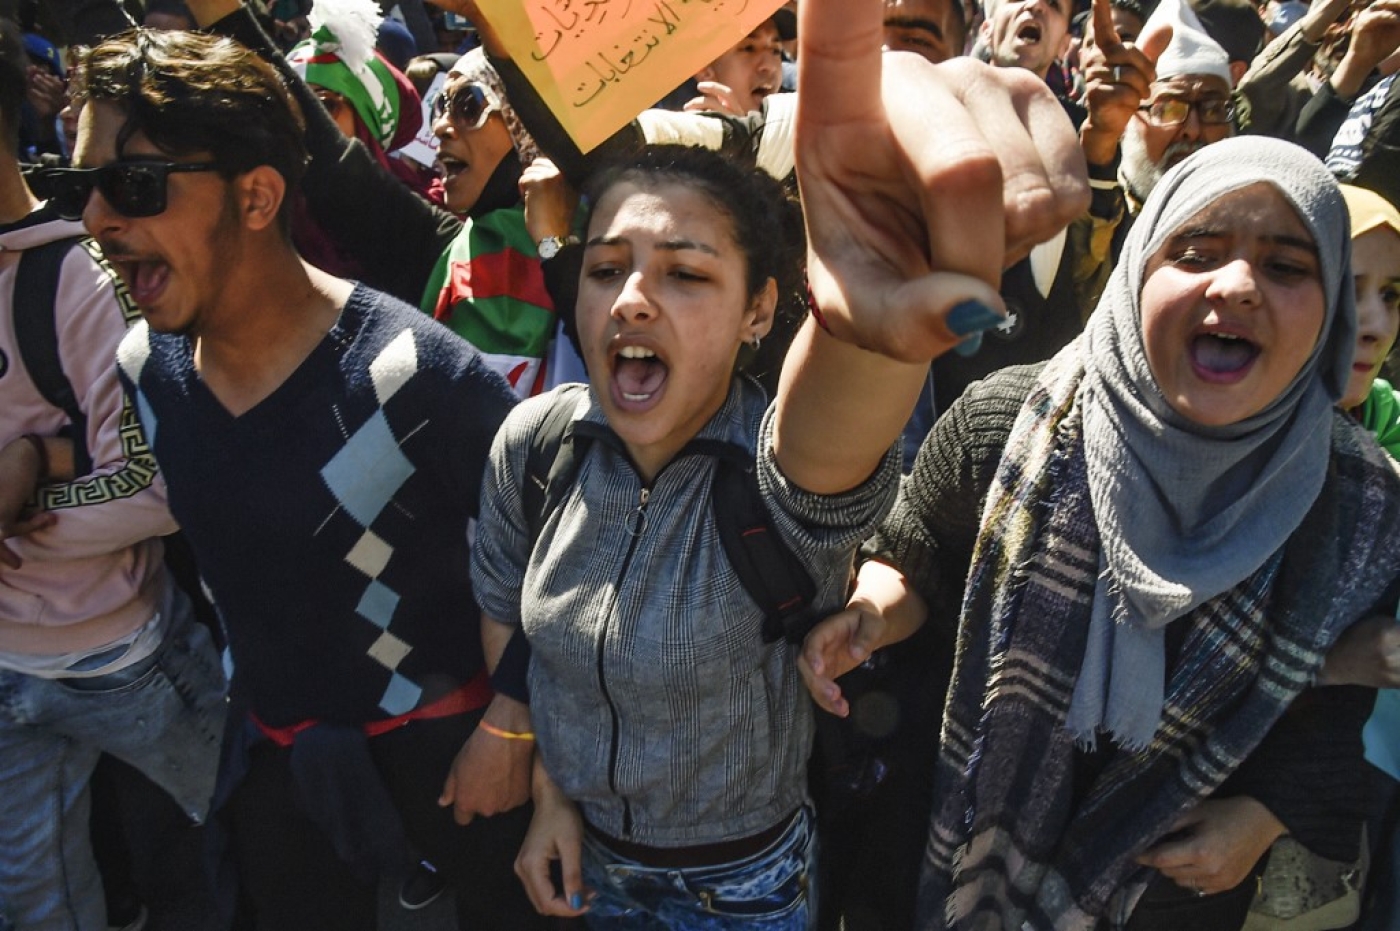 Des étudiants réclament un changement de système politique lors des marches hebdomadaires organisées dans le sillage du hirak en 2019, vaste mouvement populaire ayant conduit à la démission d’Abdelaziz Bouteflika (AFP/Ryad Kramdi)